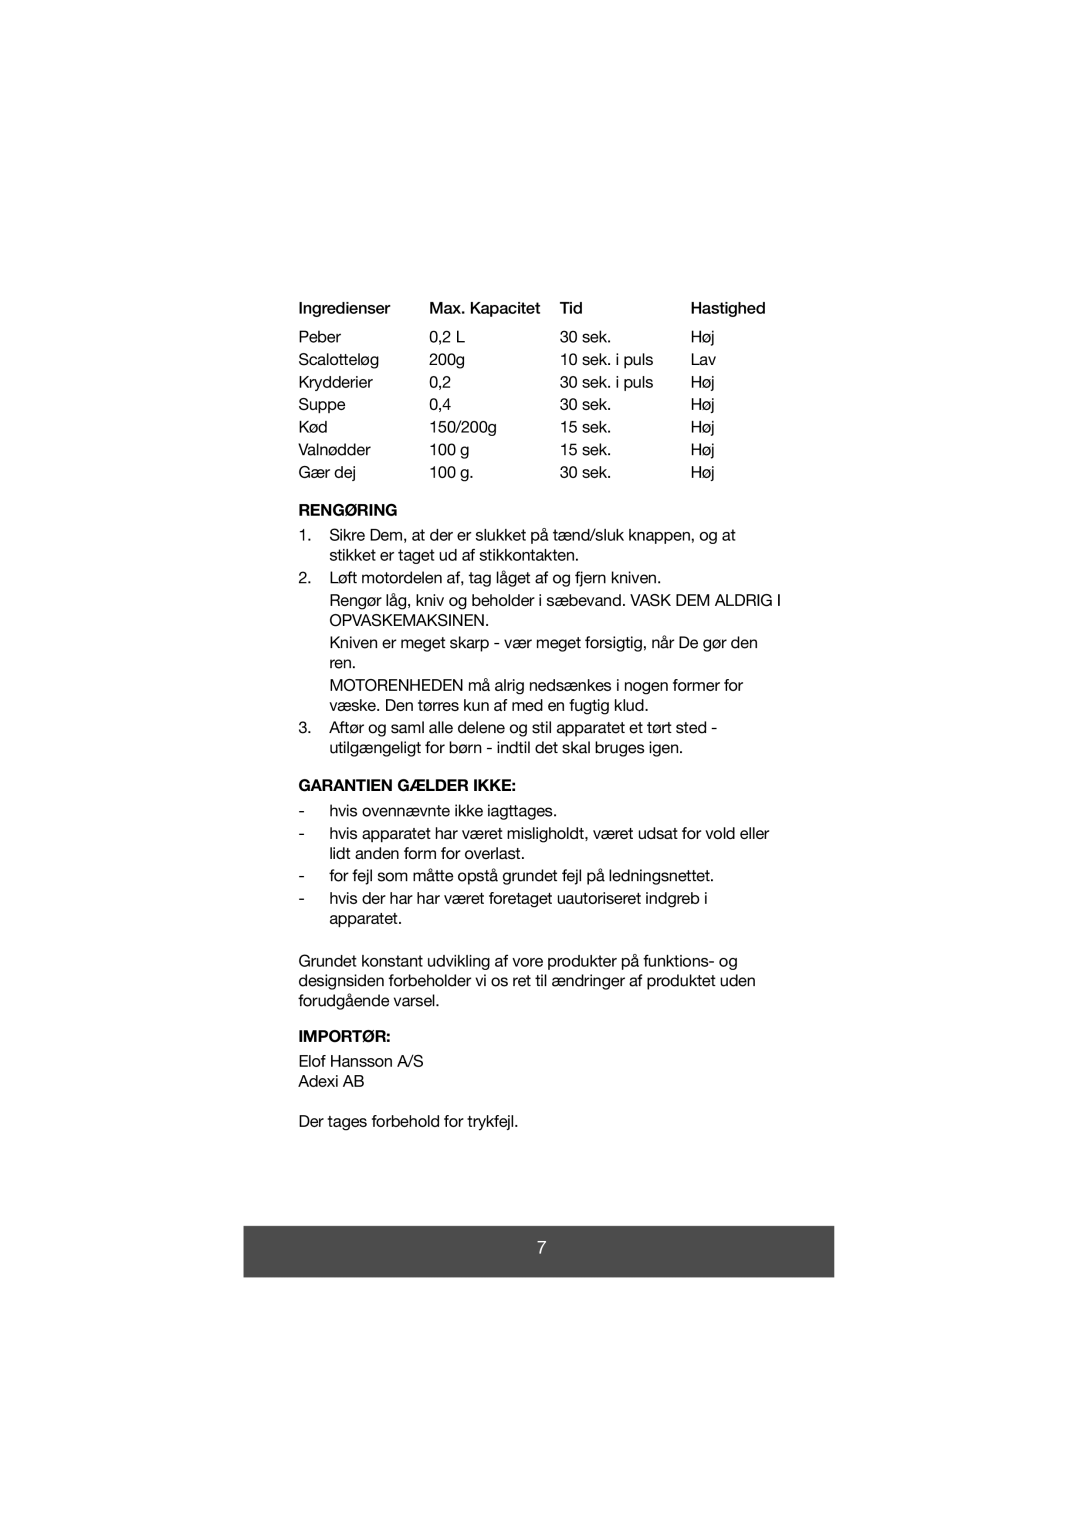 Melissa 646-028 manual Rengøring, Garantien Gælder Ikke, Importør 